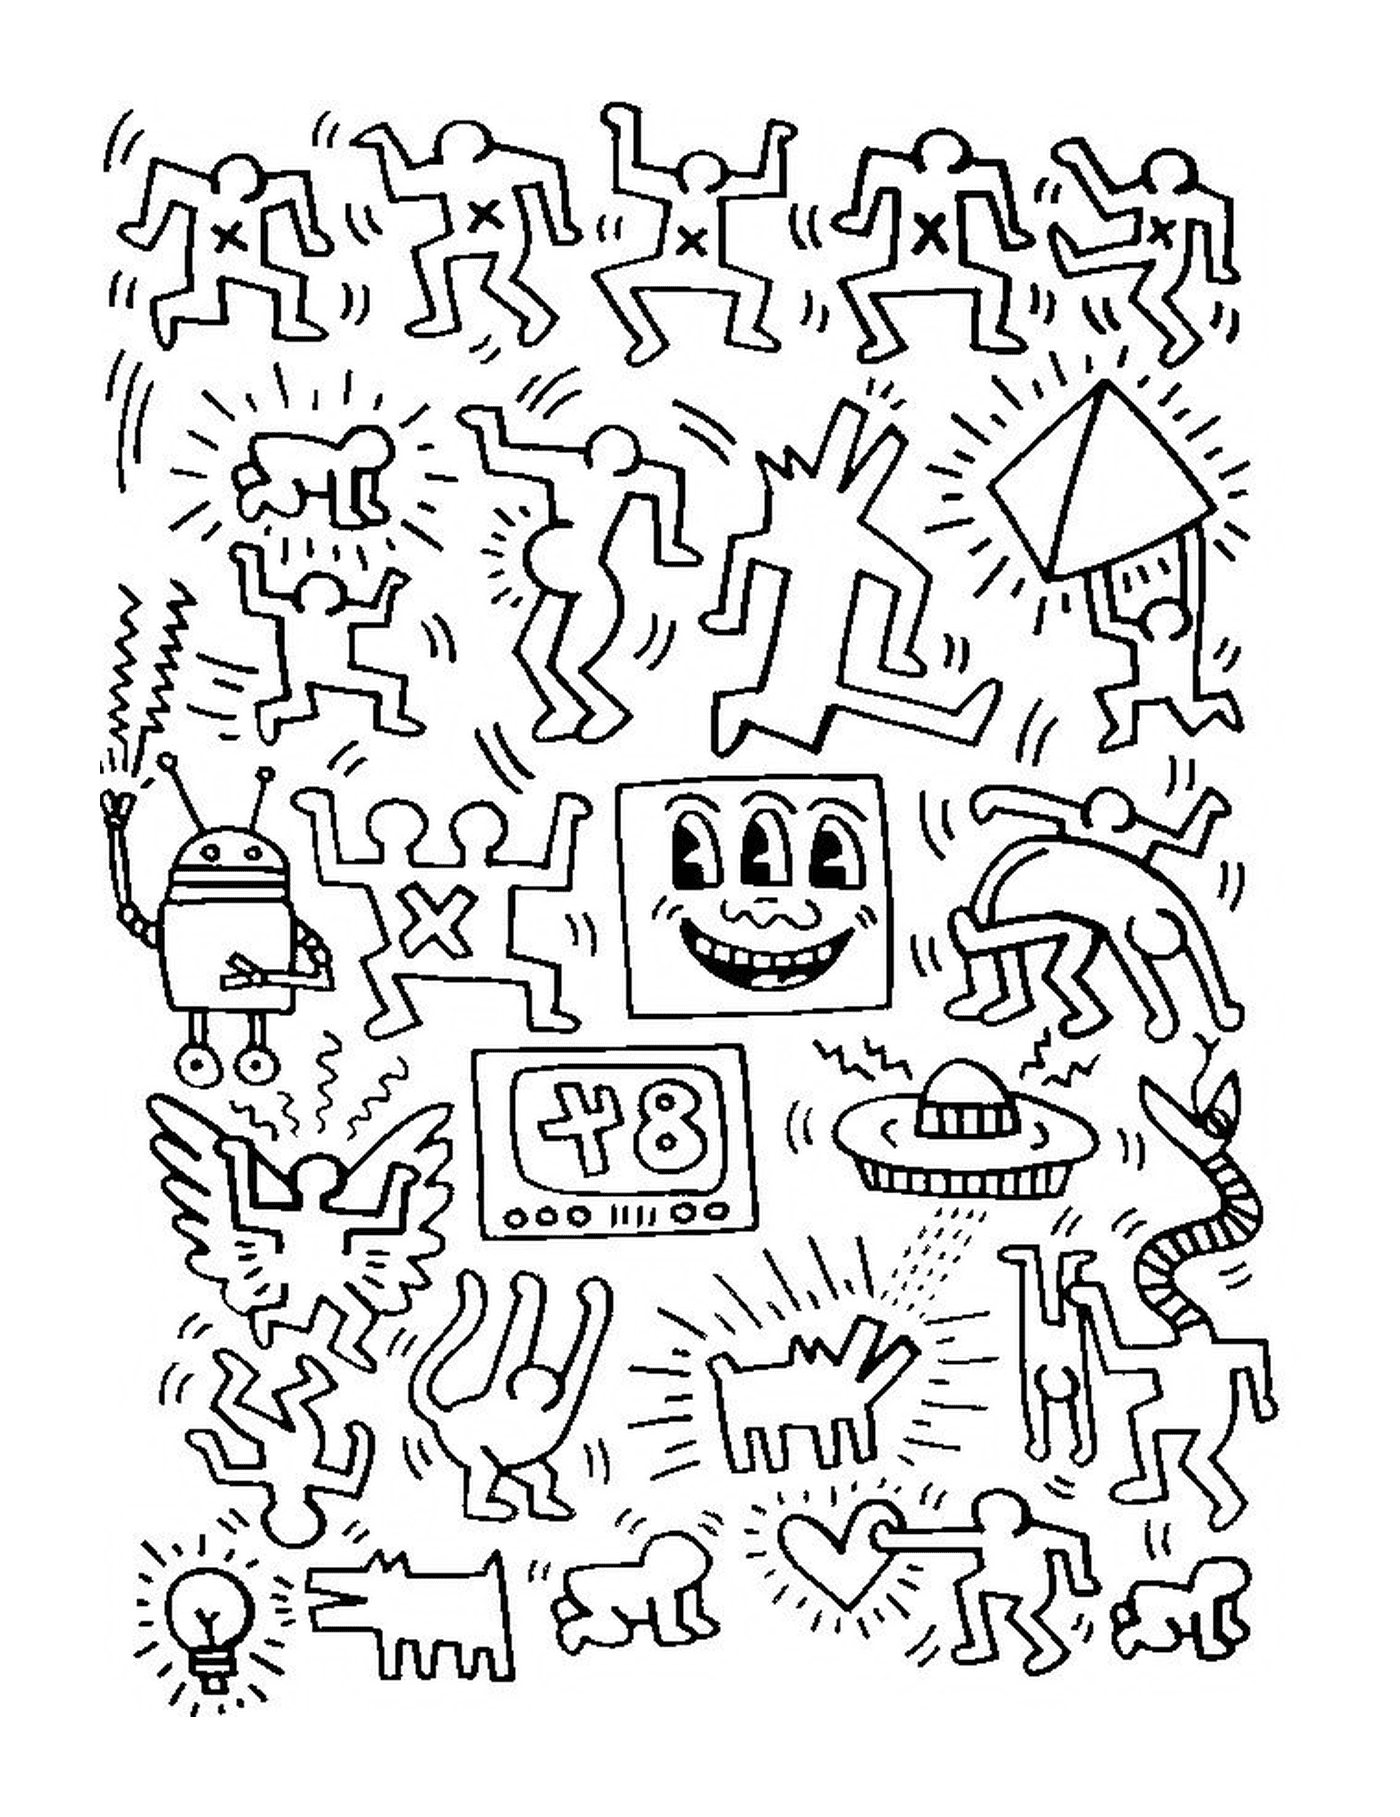  um grupo de pessoas de acordo com Keith Haring 